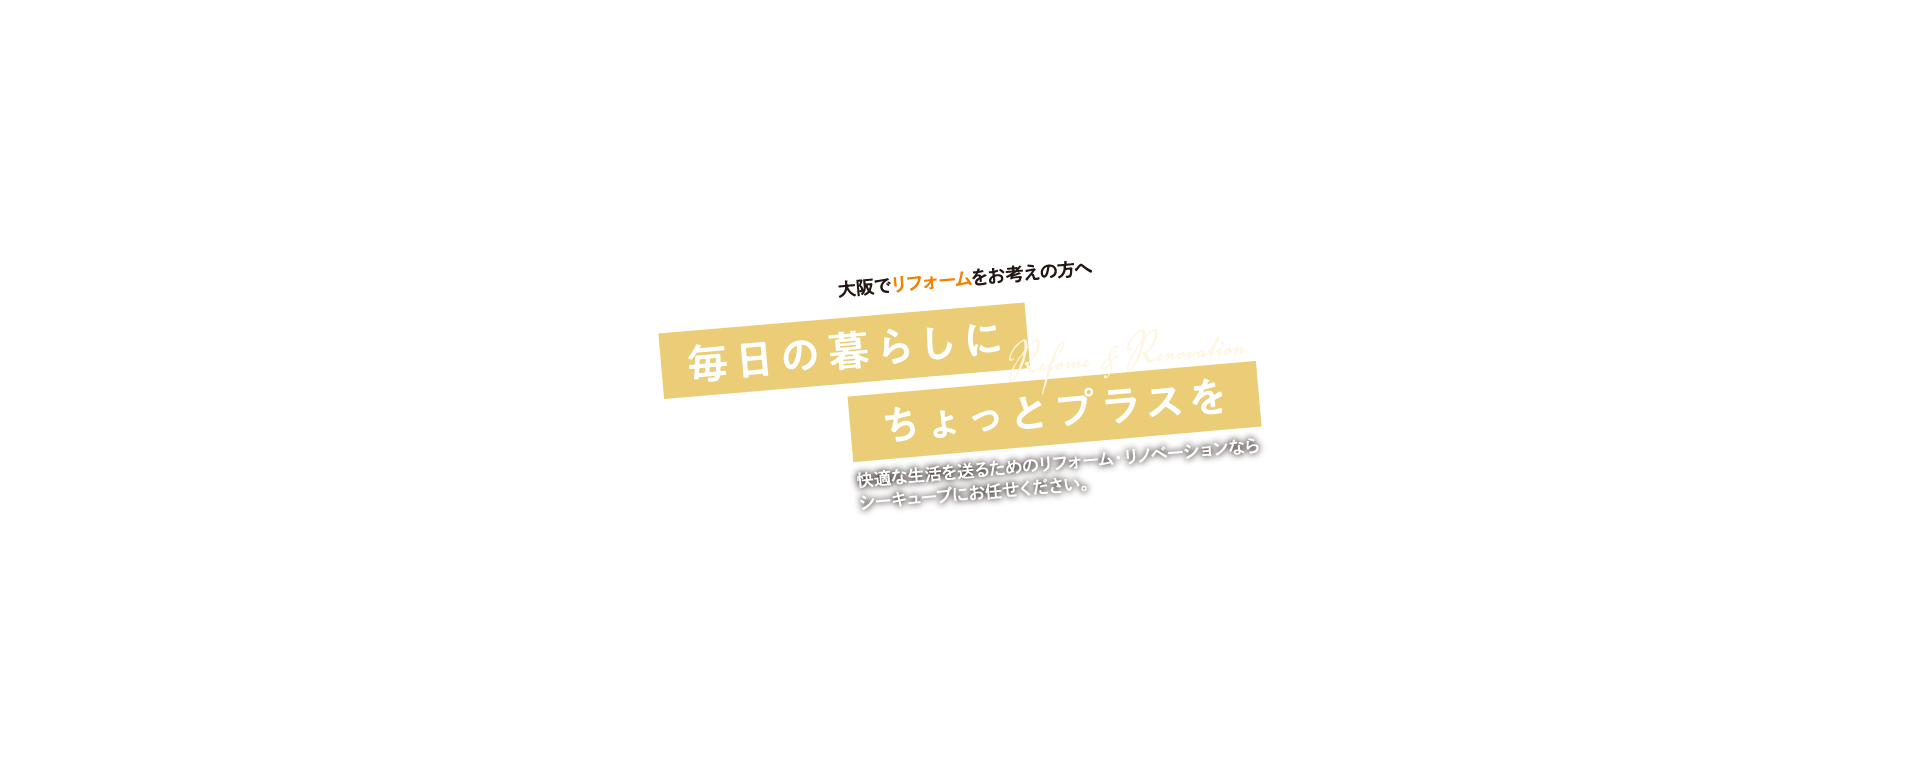 大阪でリフォームをお考えの方へ「毎日の暮らしにちょっとプラスを」快適な生活を送るためのリフォーム・リノベーションならシーキューブにお任せください。